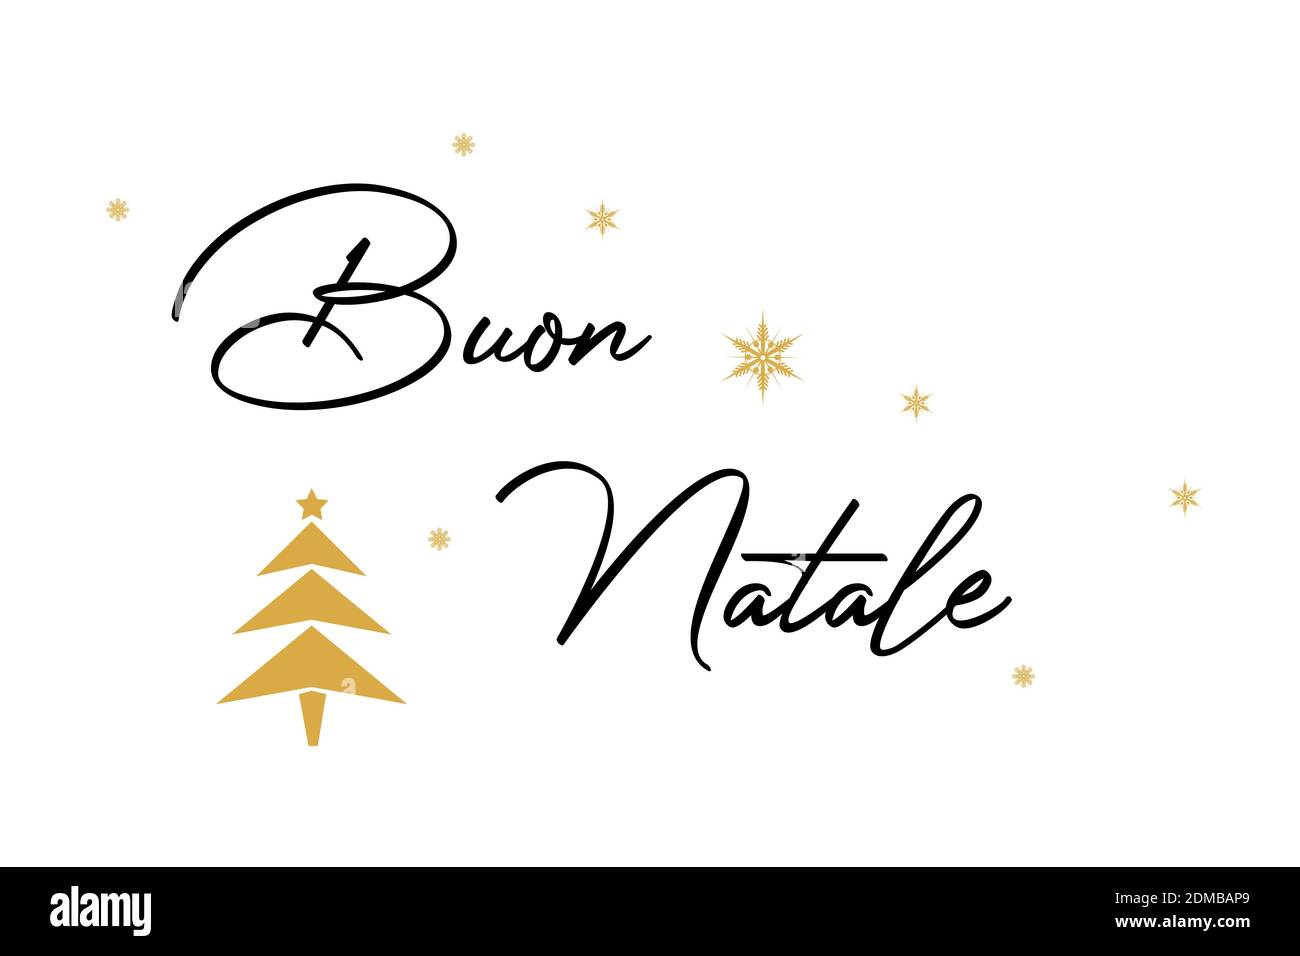 Un texte italien « Buon natale » sur fond blanc avec Illustrations de  flocons de neige et d'arbres - traduction « Joyeux Noël » Photo Stock -  Alamy